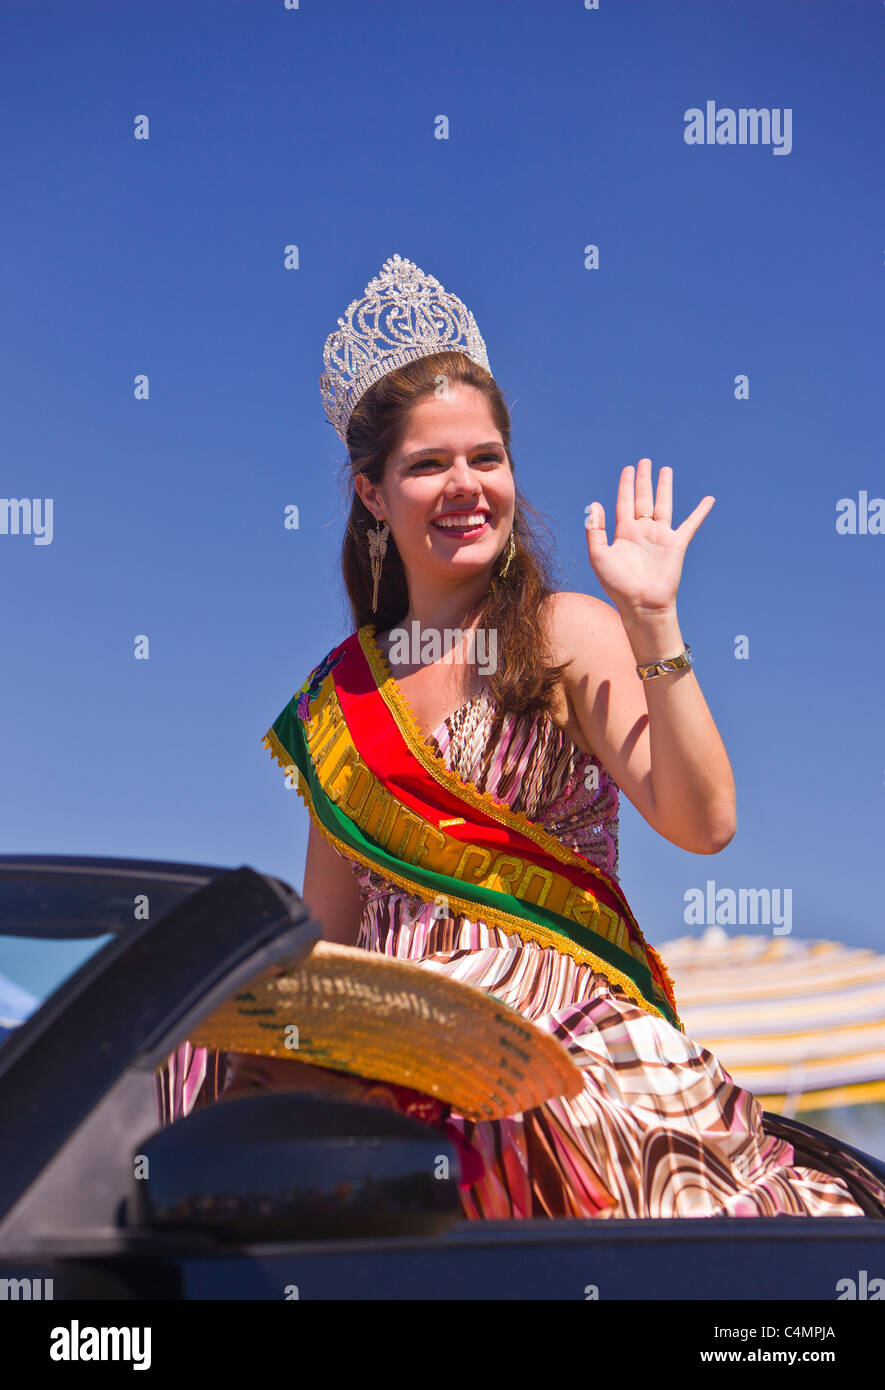 MANASSAS, VIRGINIA, USA - Miss Comite de Pro Bolivia, during Bolivian folklife festival parade. Stock Photo